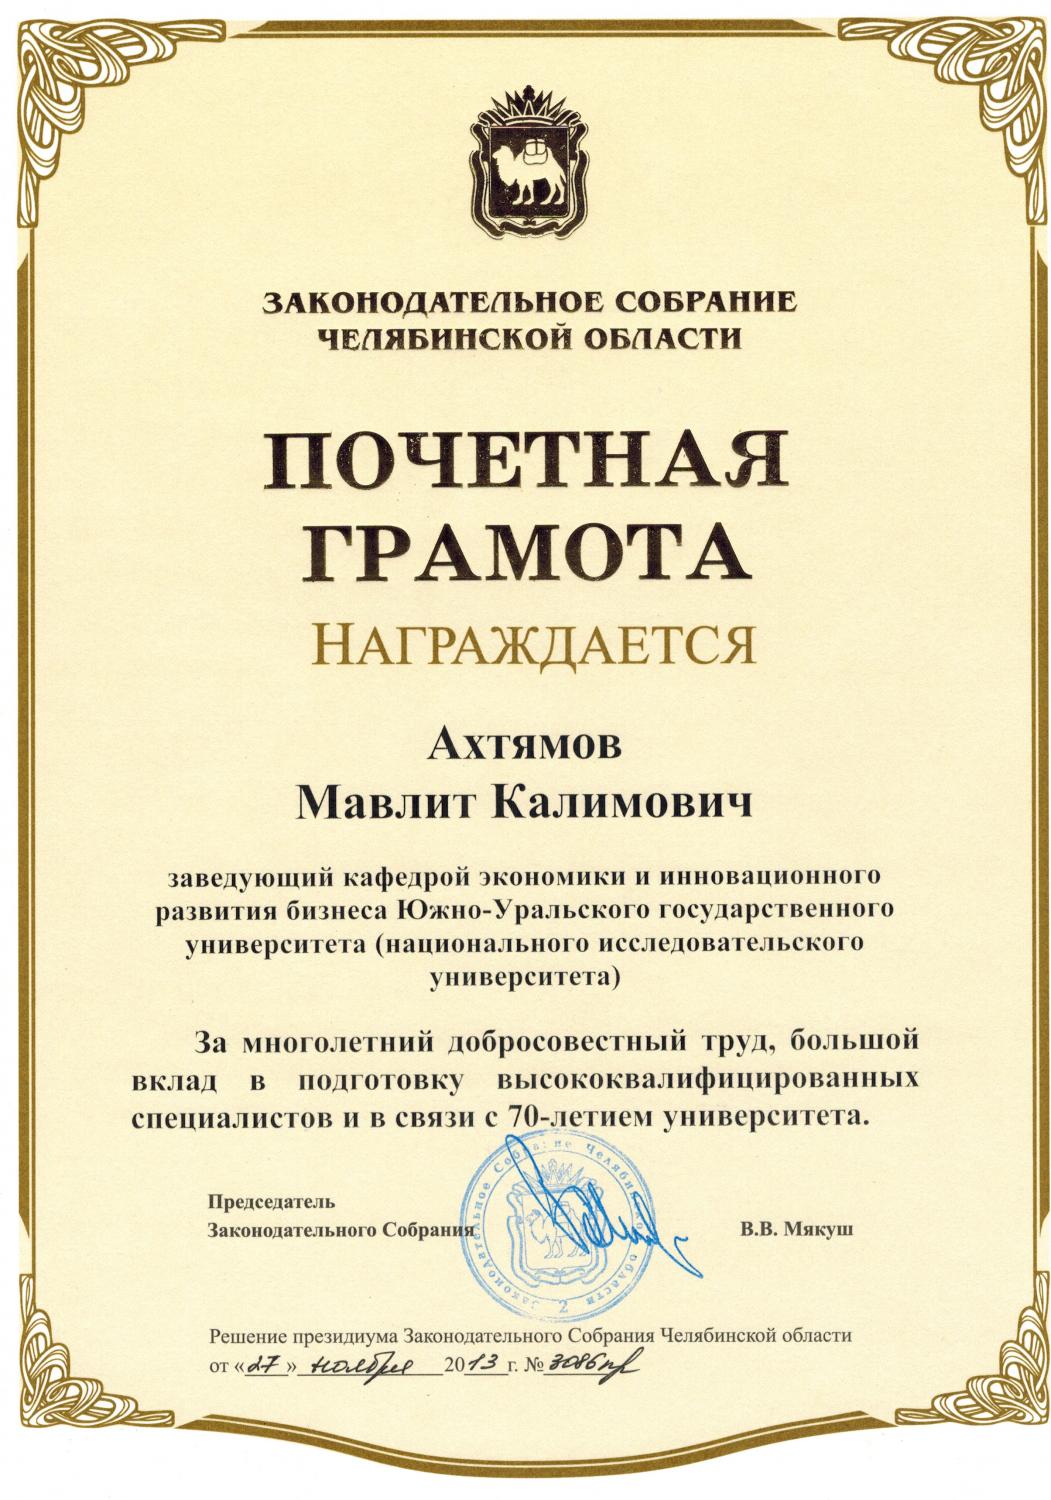 Ахтямов М.К. удостоен почетной грамоты Заксобрания